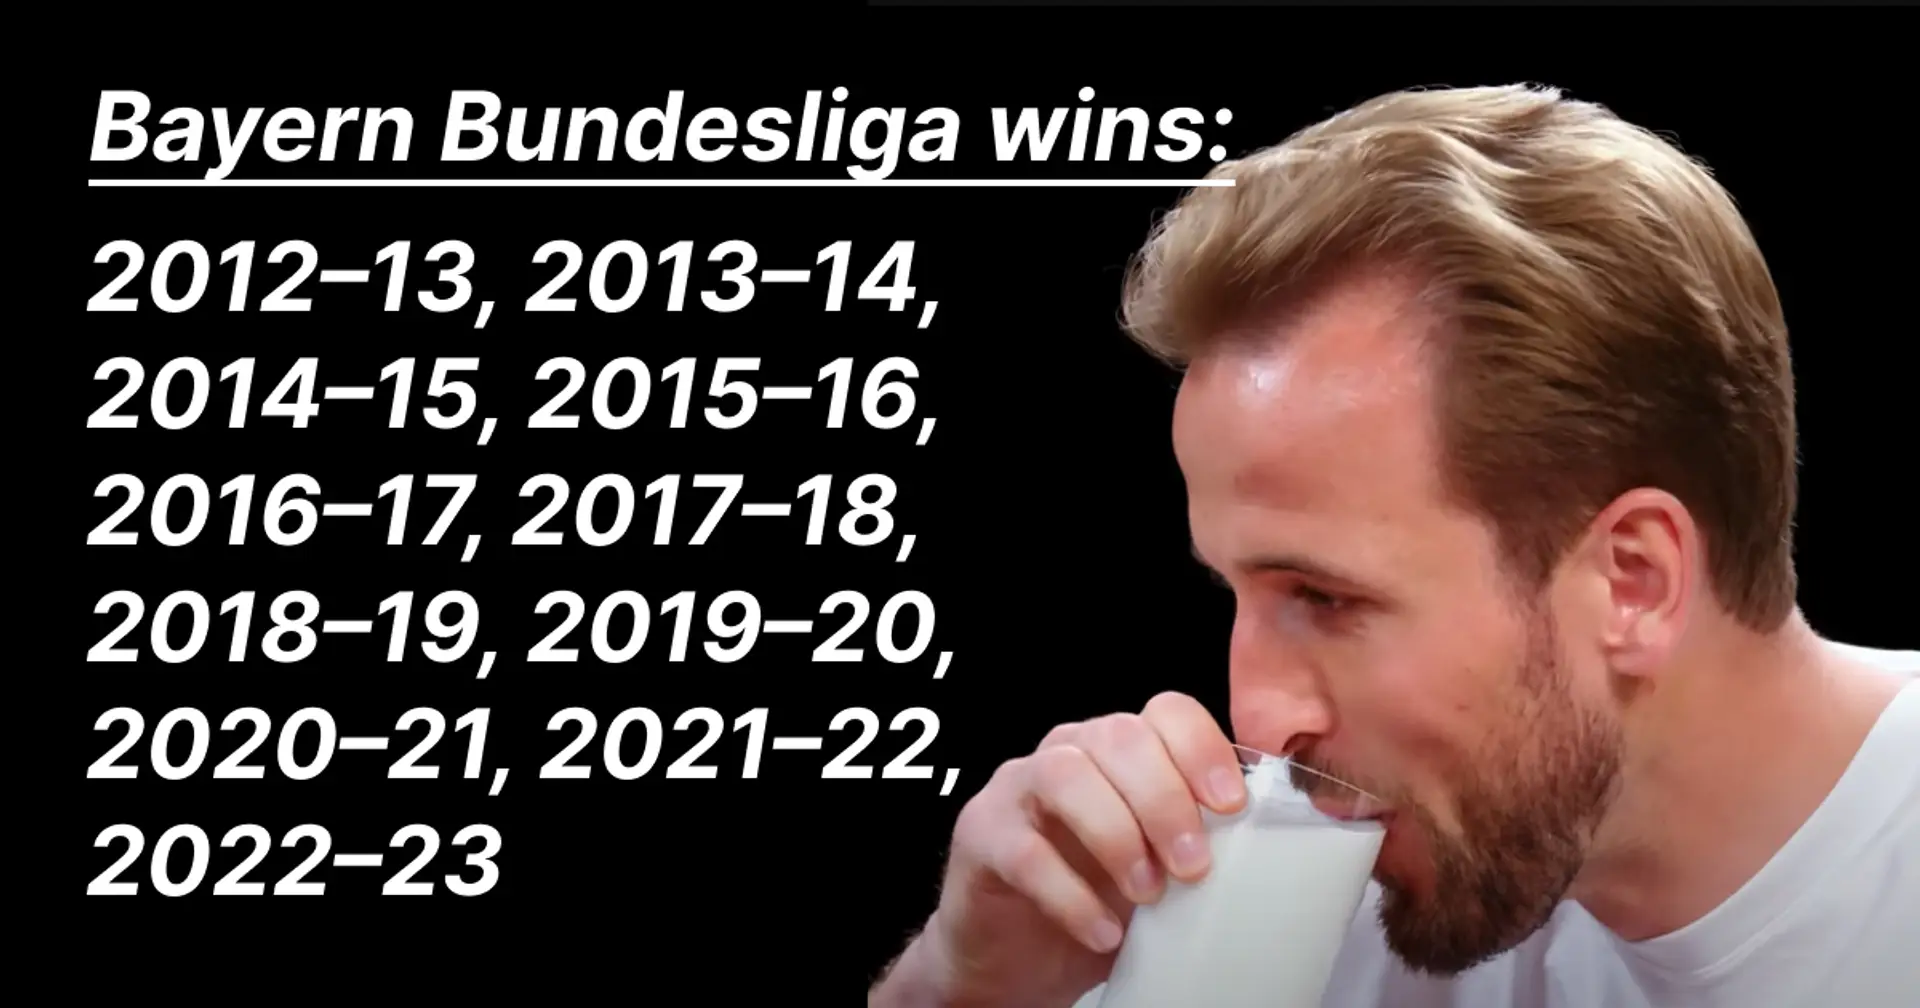 Warum wollten die Bayern unbedingt Harry Kane verpflichten, wenn sie die Bundesliga auch in der schlechtesten Phase gewinnen? Erklärt